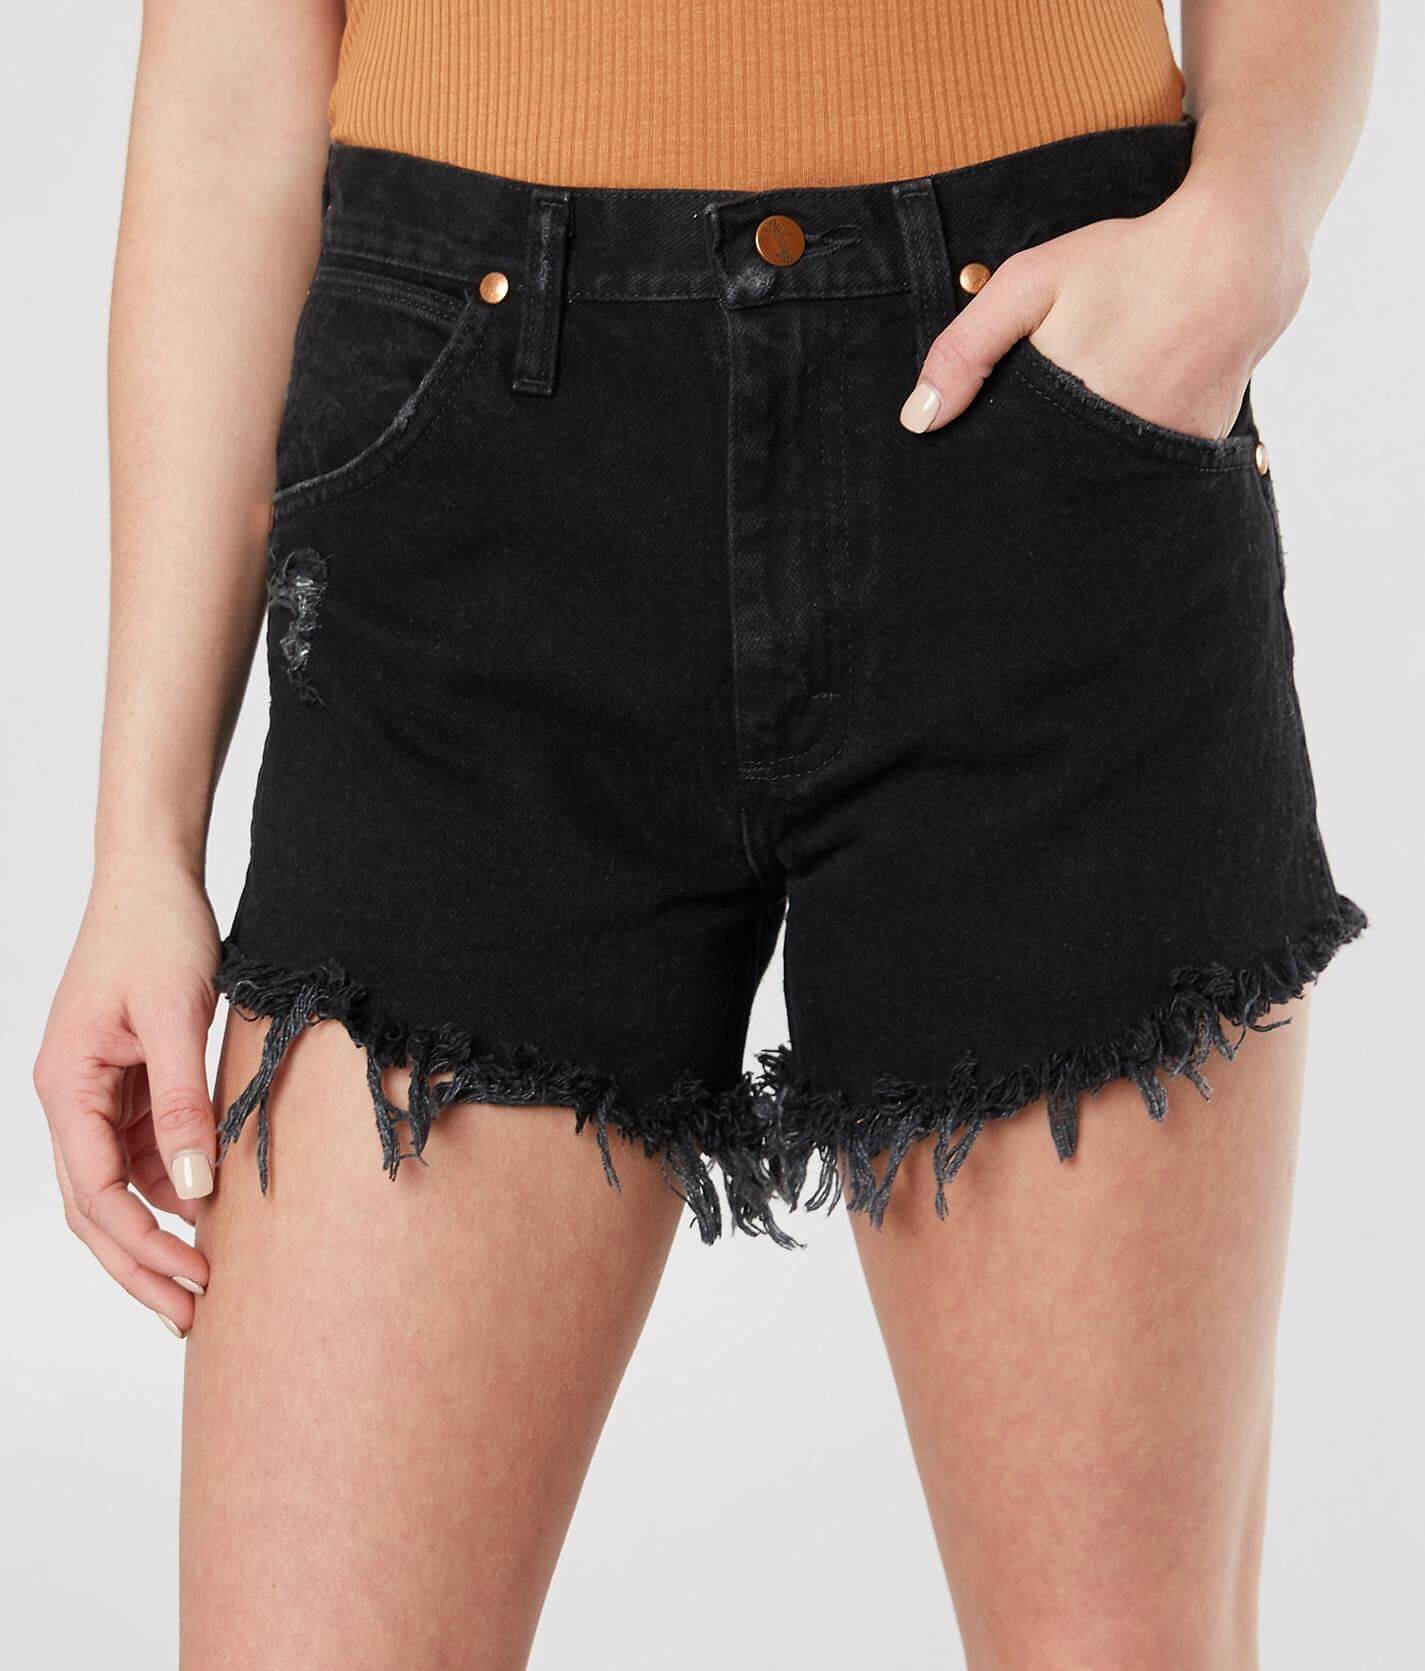 black wrangler jean shorts